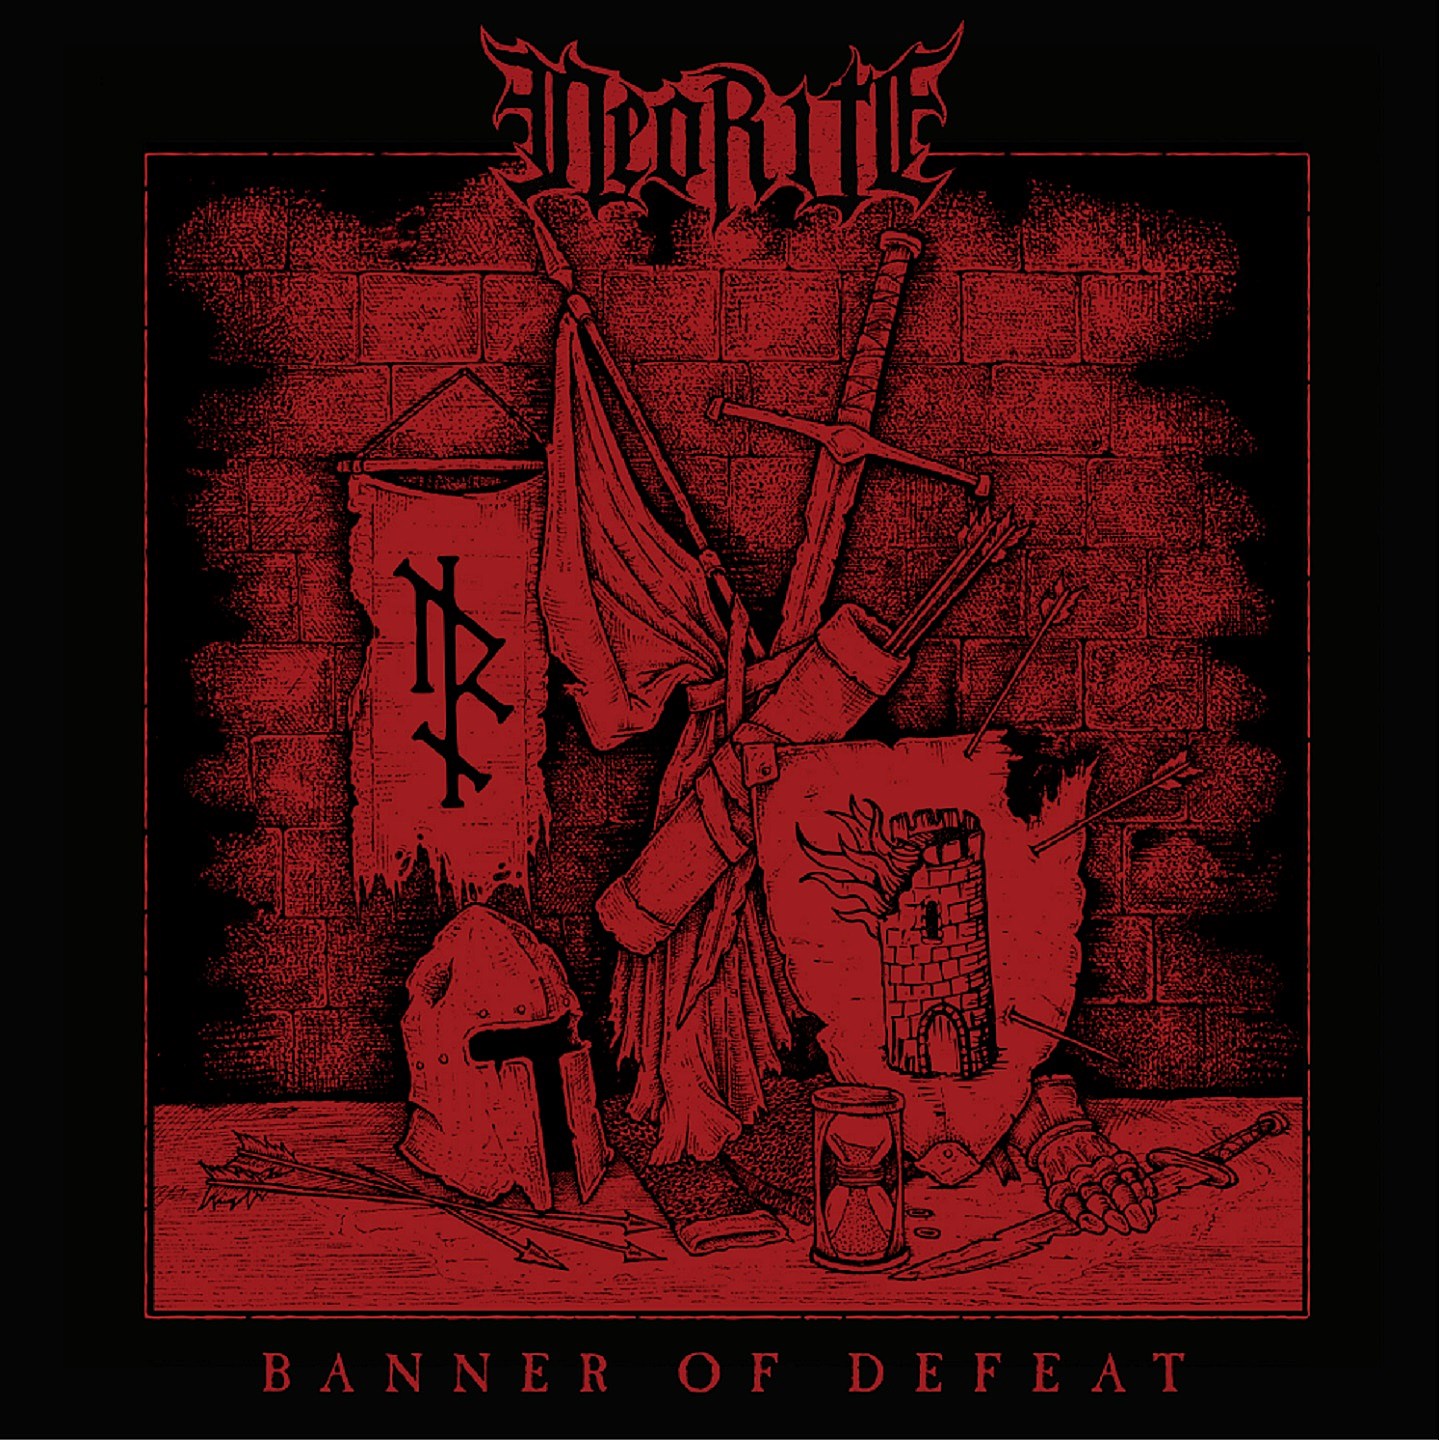 Neorite - Banner of Defeat